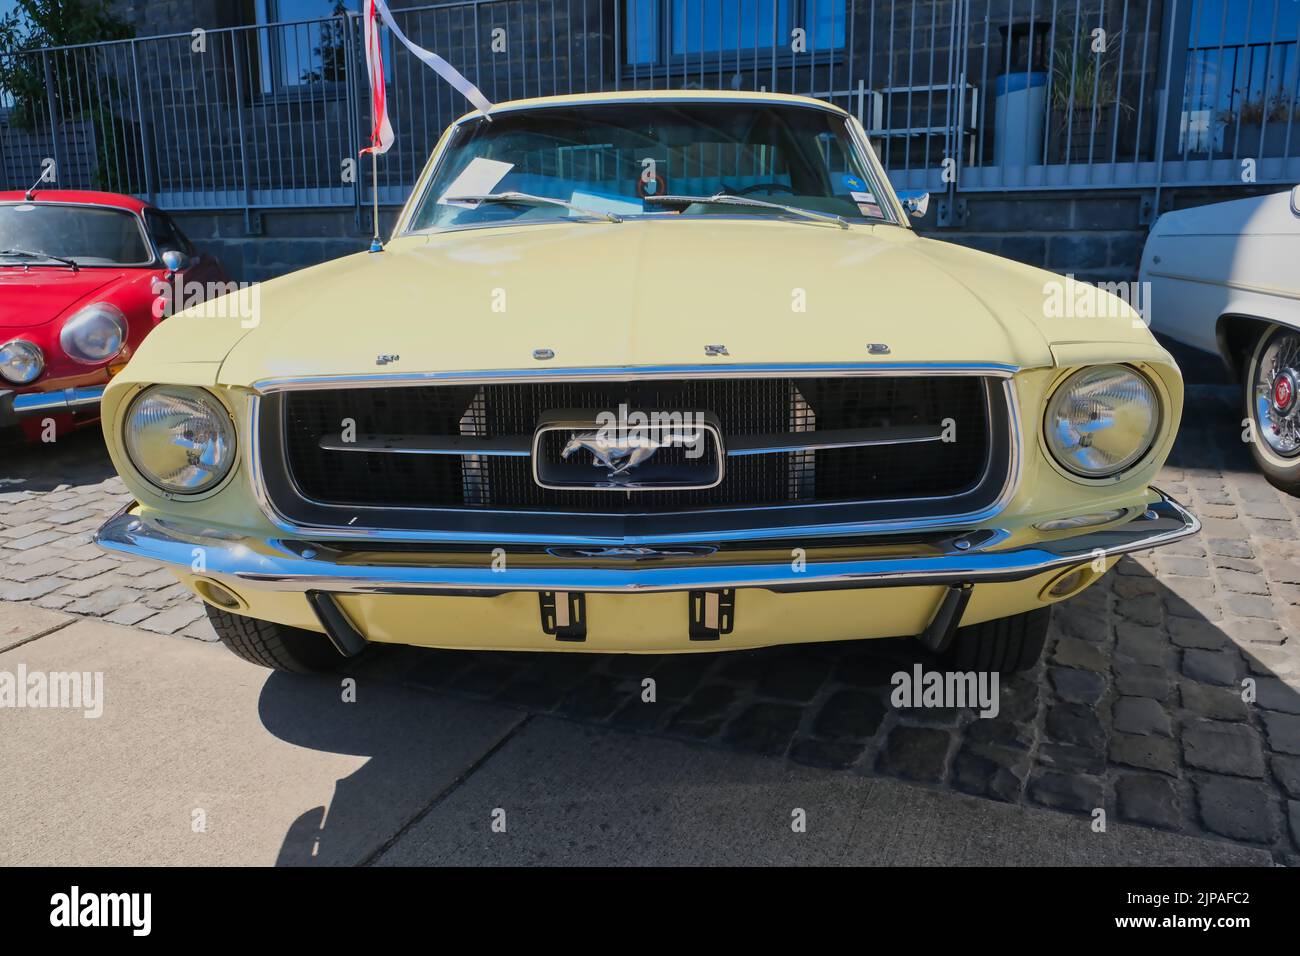 Ford Mustang des années 60 à l'exposition oldtimer à Cologne, vue de face Banque D'Images